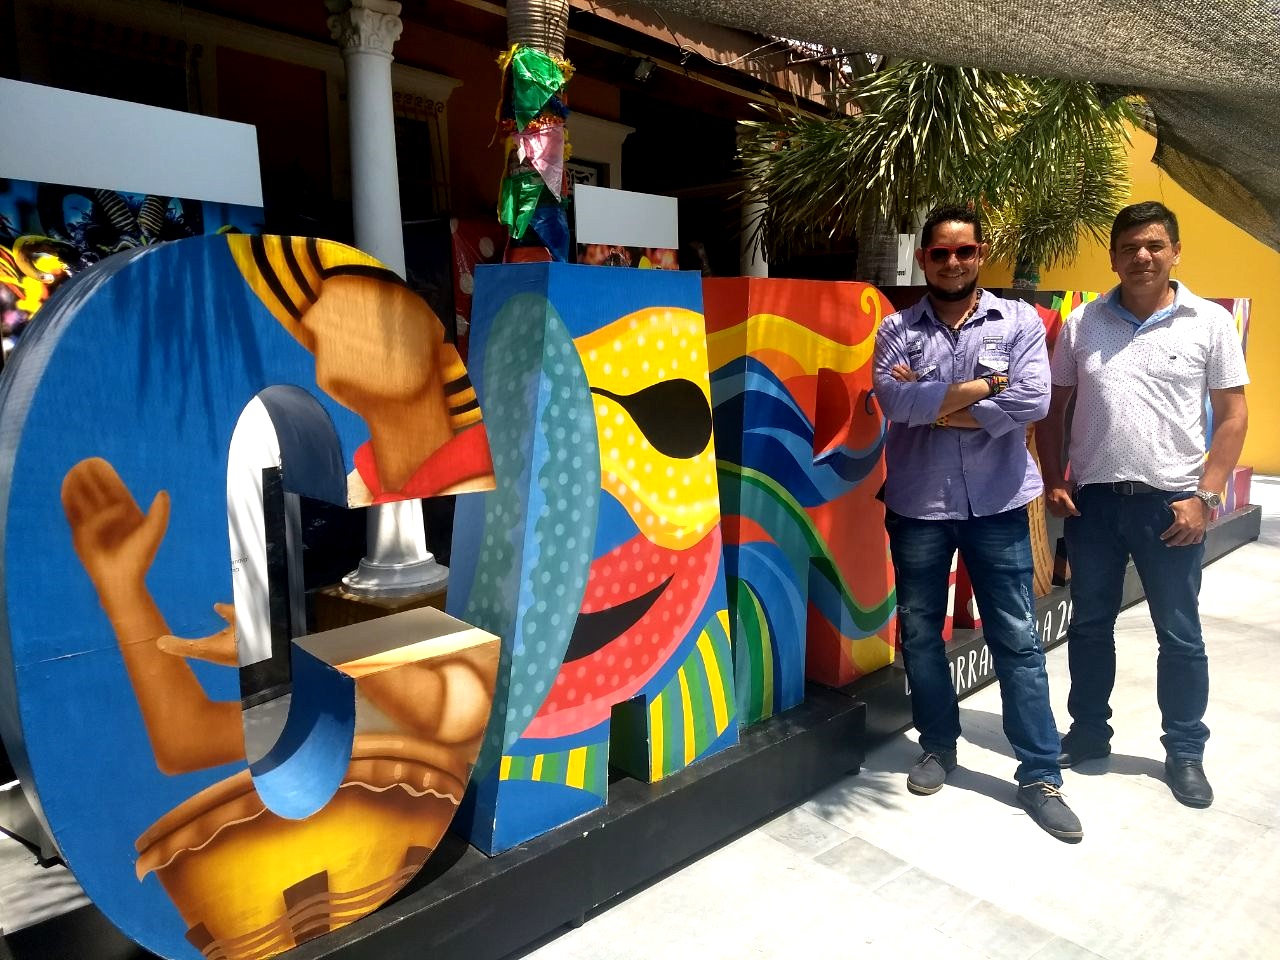 De patrimonio a patrimonio: Las Fallas reciben al Carnaval de Barranquilla